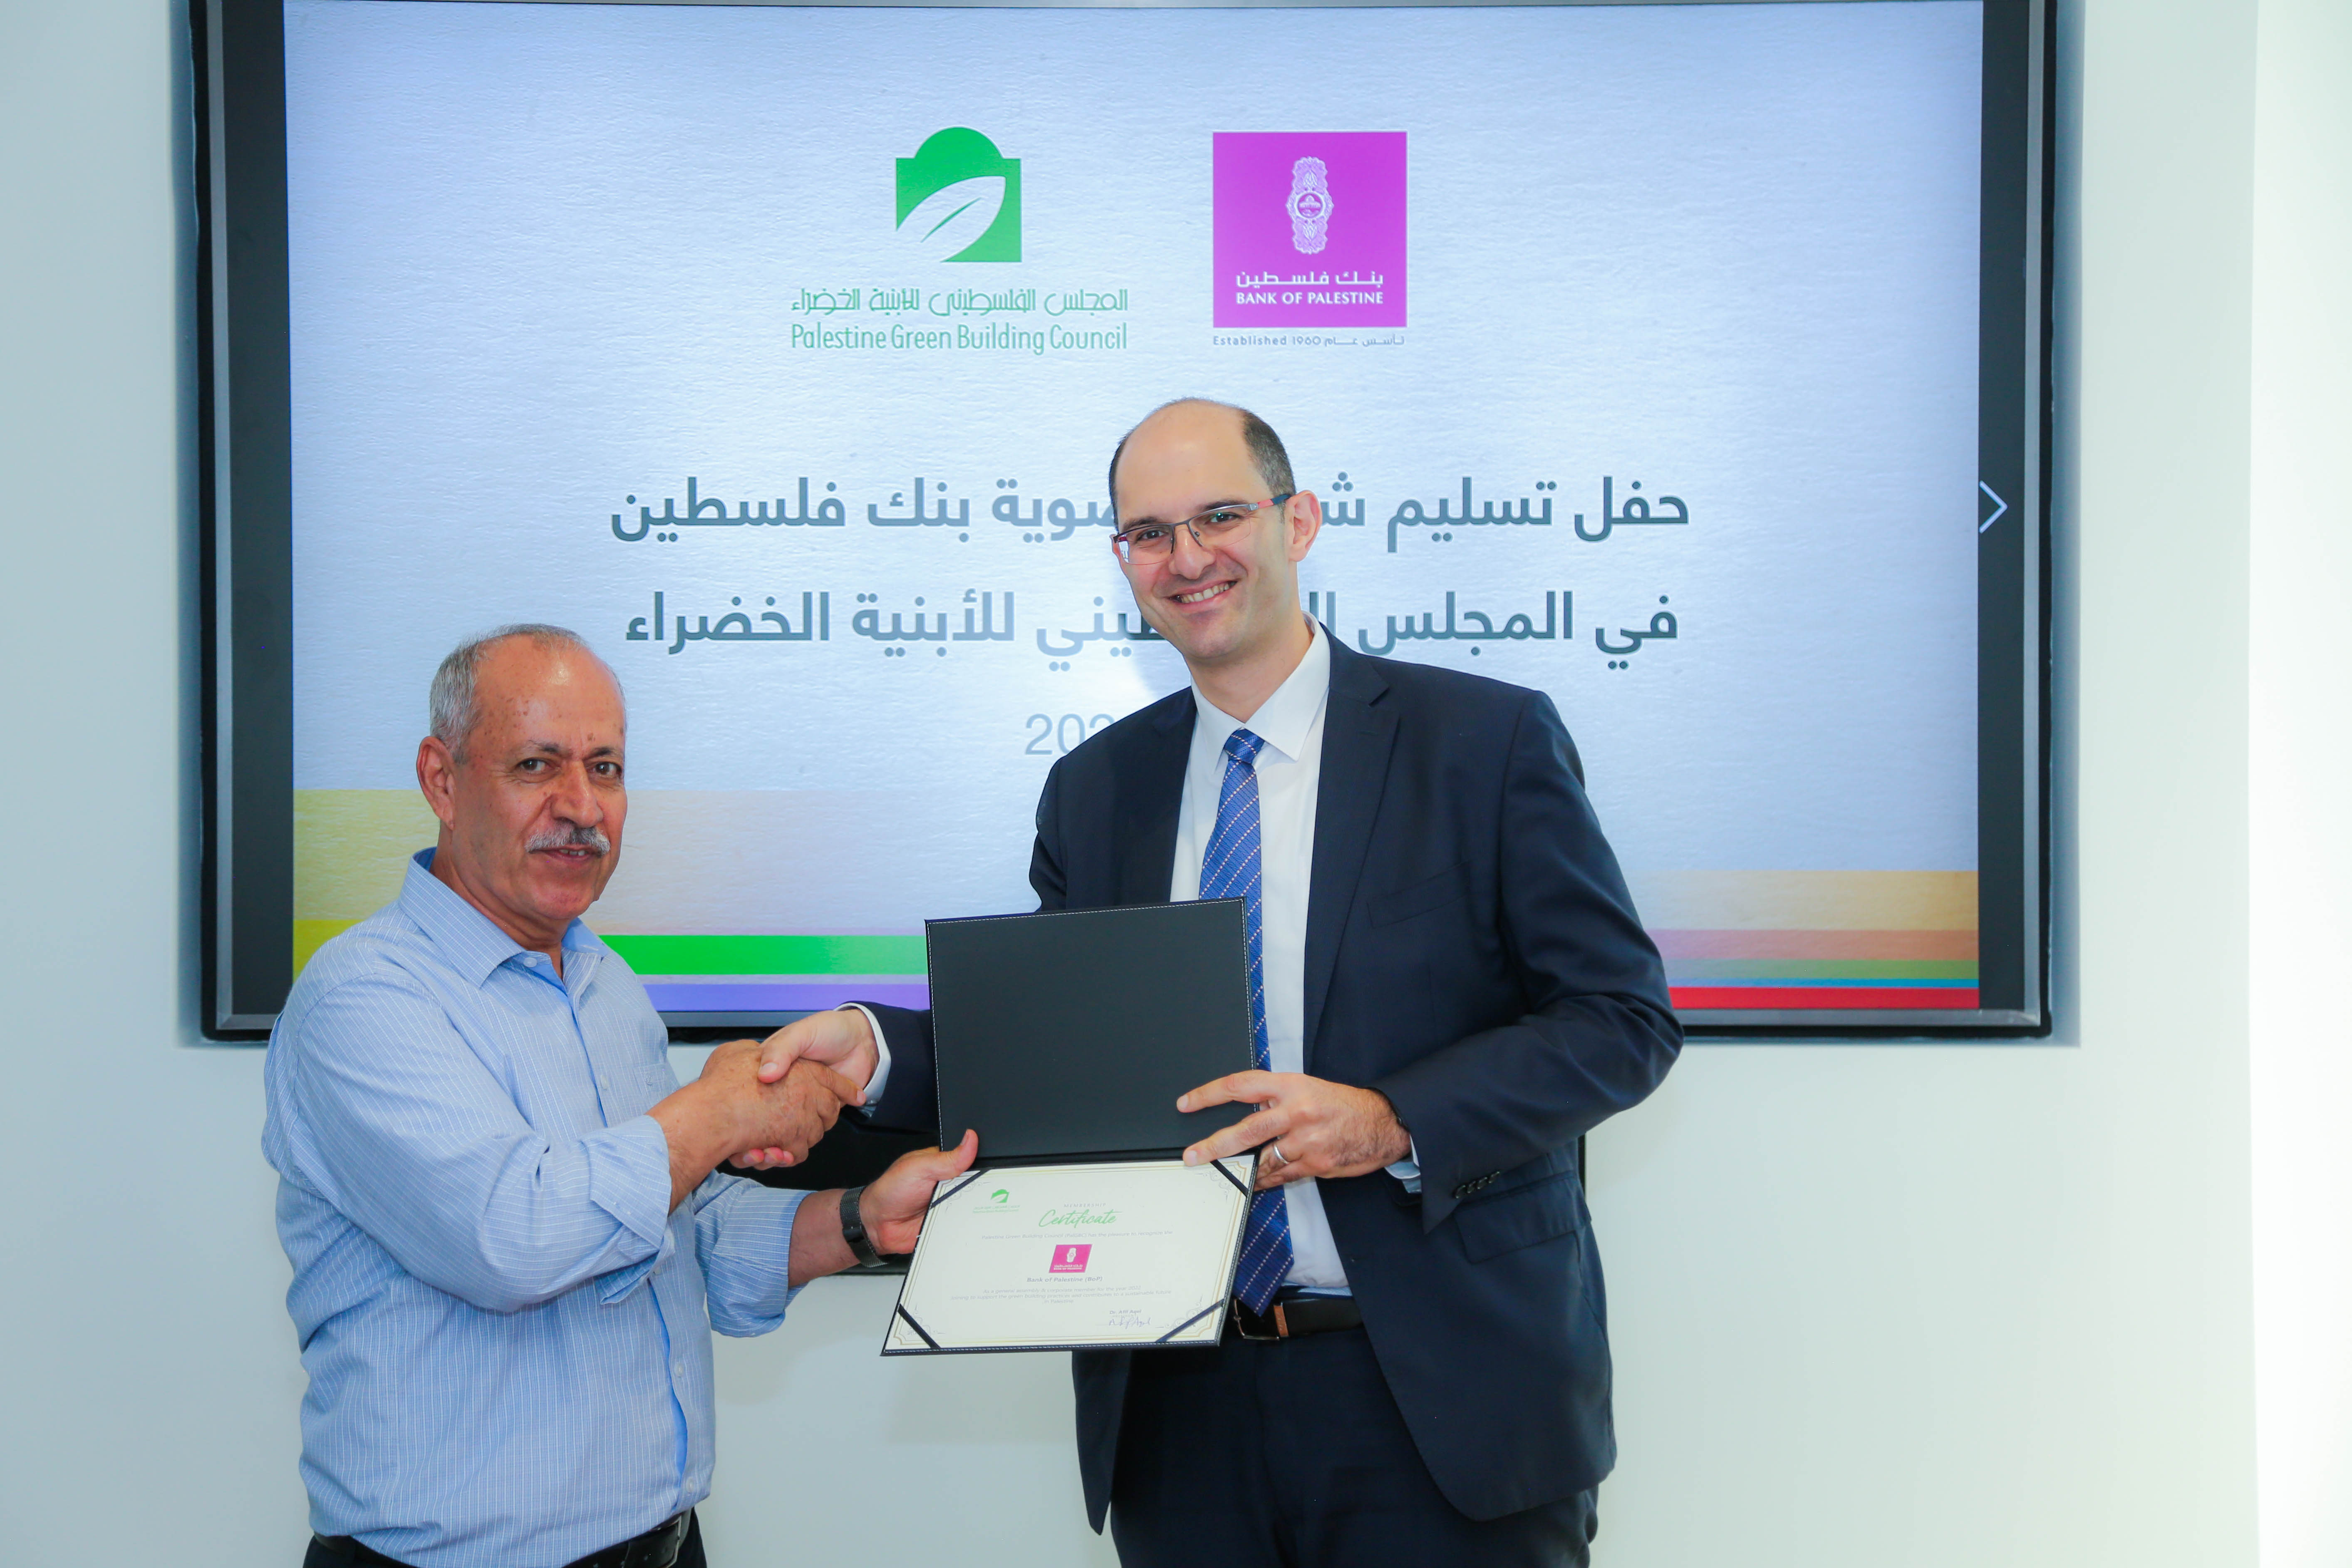 بنك فلسطين ينضم إلى عضوية المجلس الفلسطيني للأبنية الخضراء